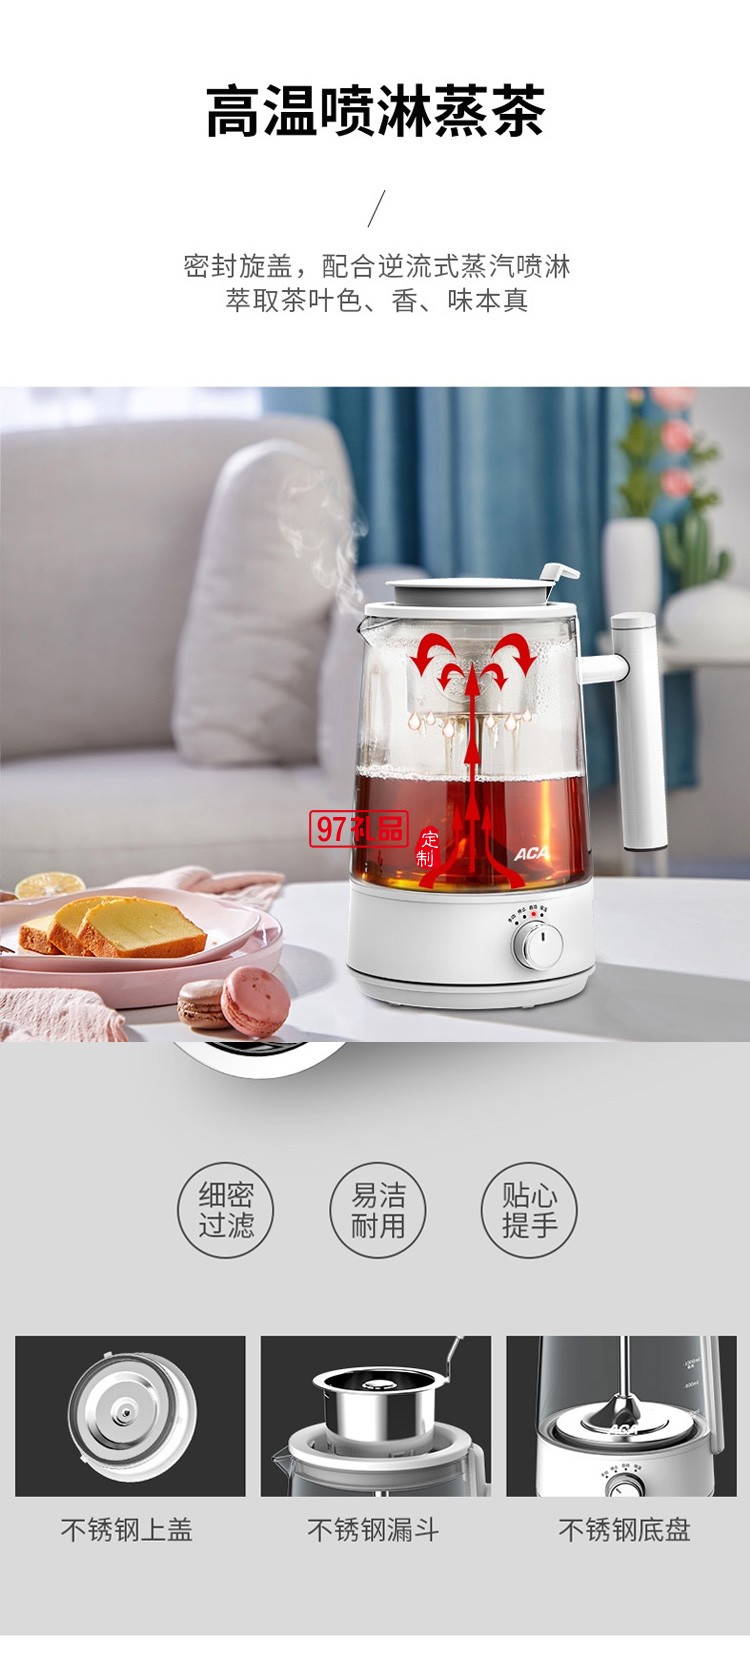 煮茶器 1L养生壶多功能花茶壶ALY-10ZC03J定制公司广告礼品